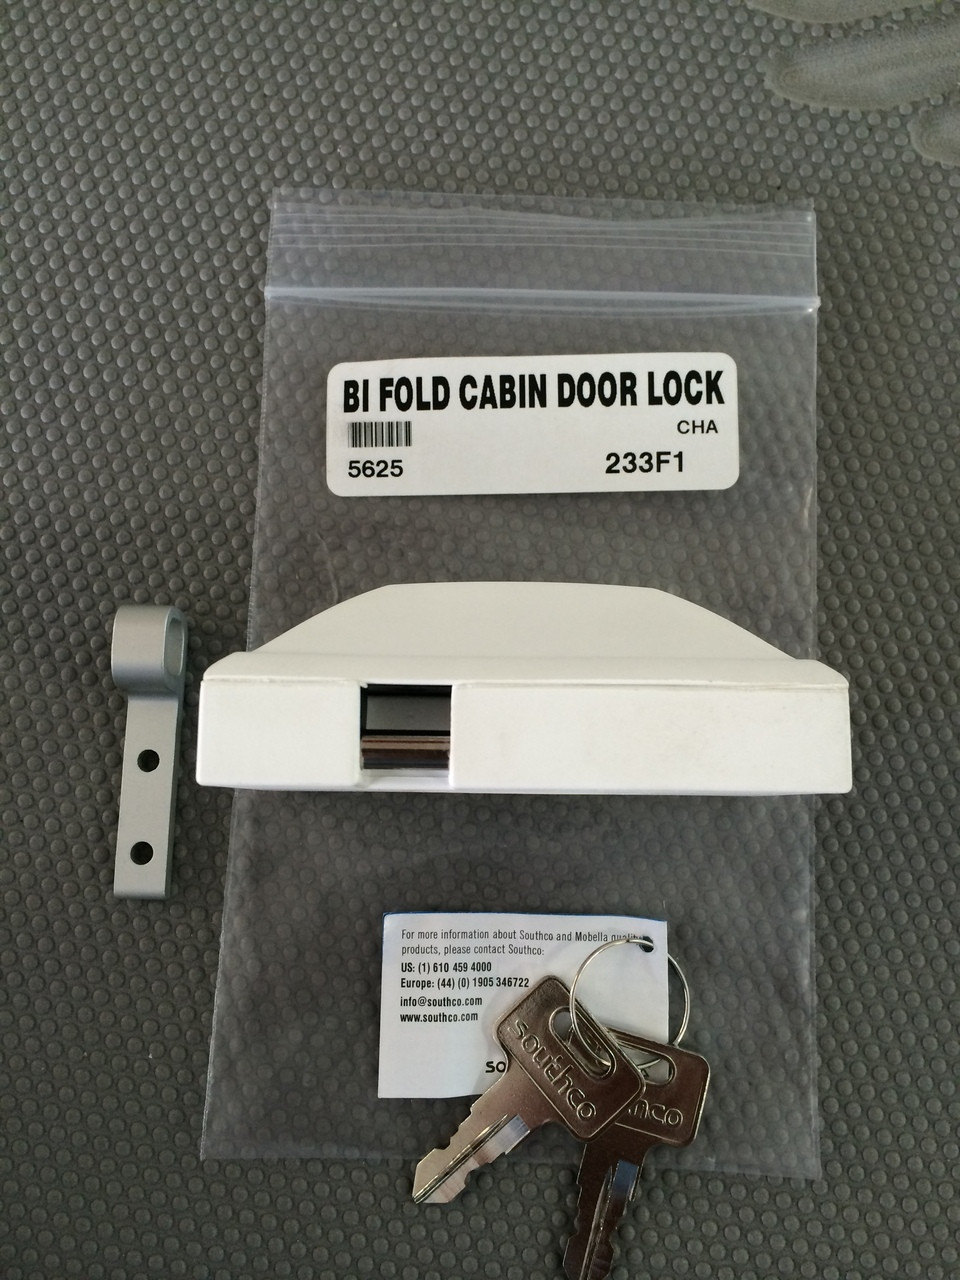 BI FOLD CABIN DOOR LOCK